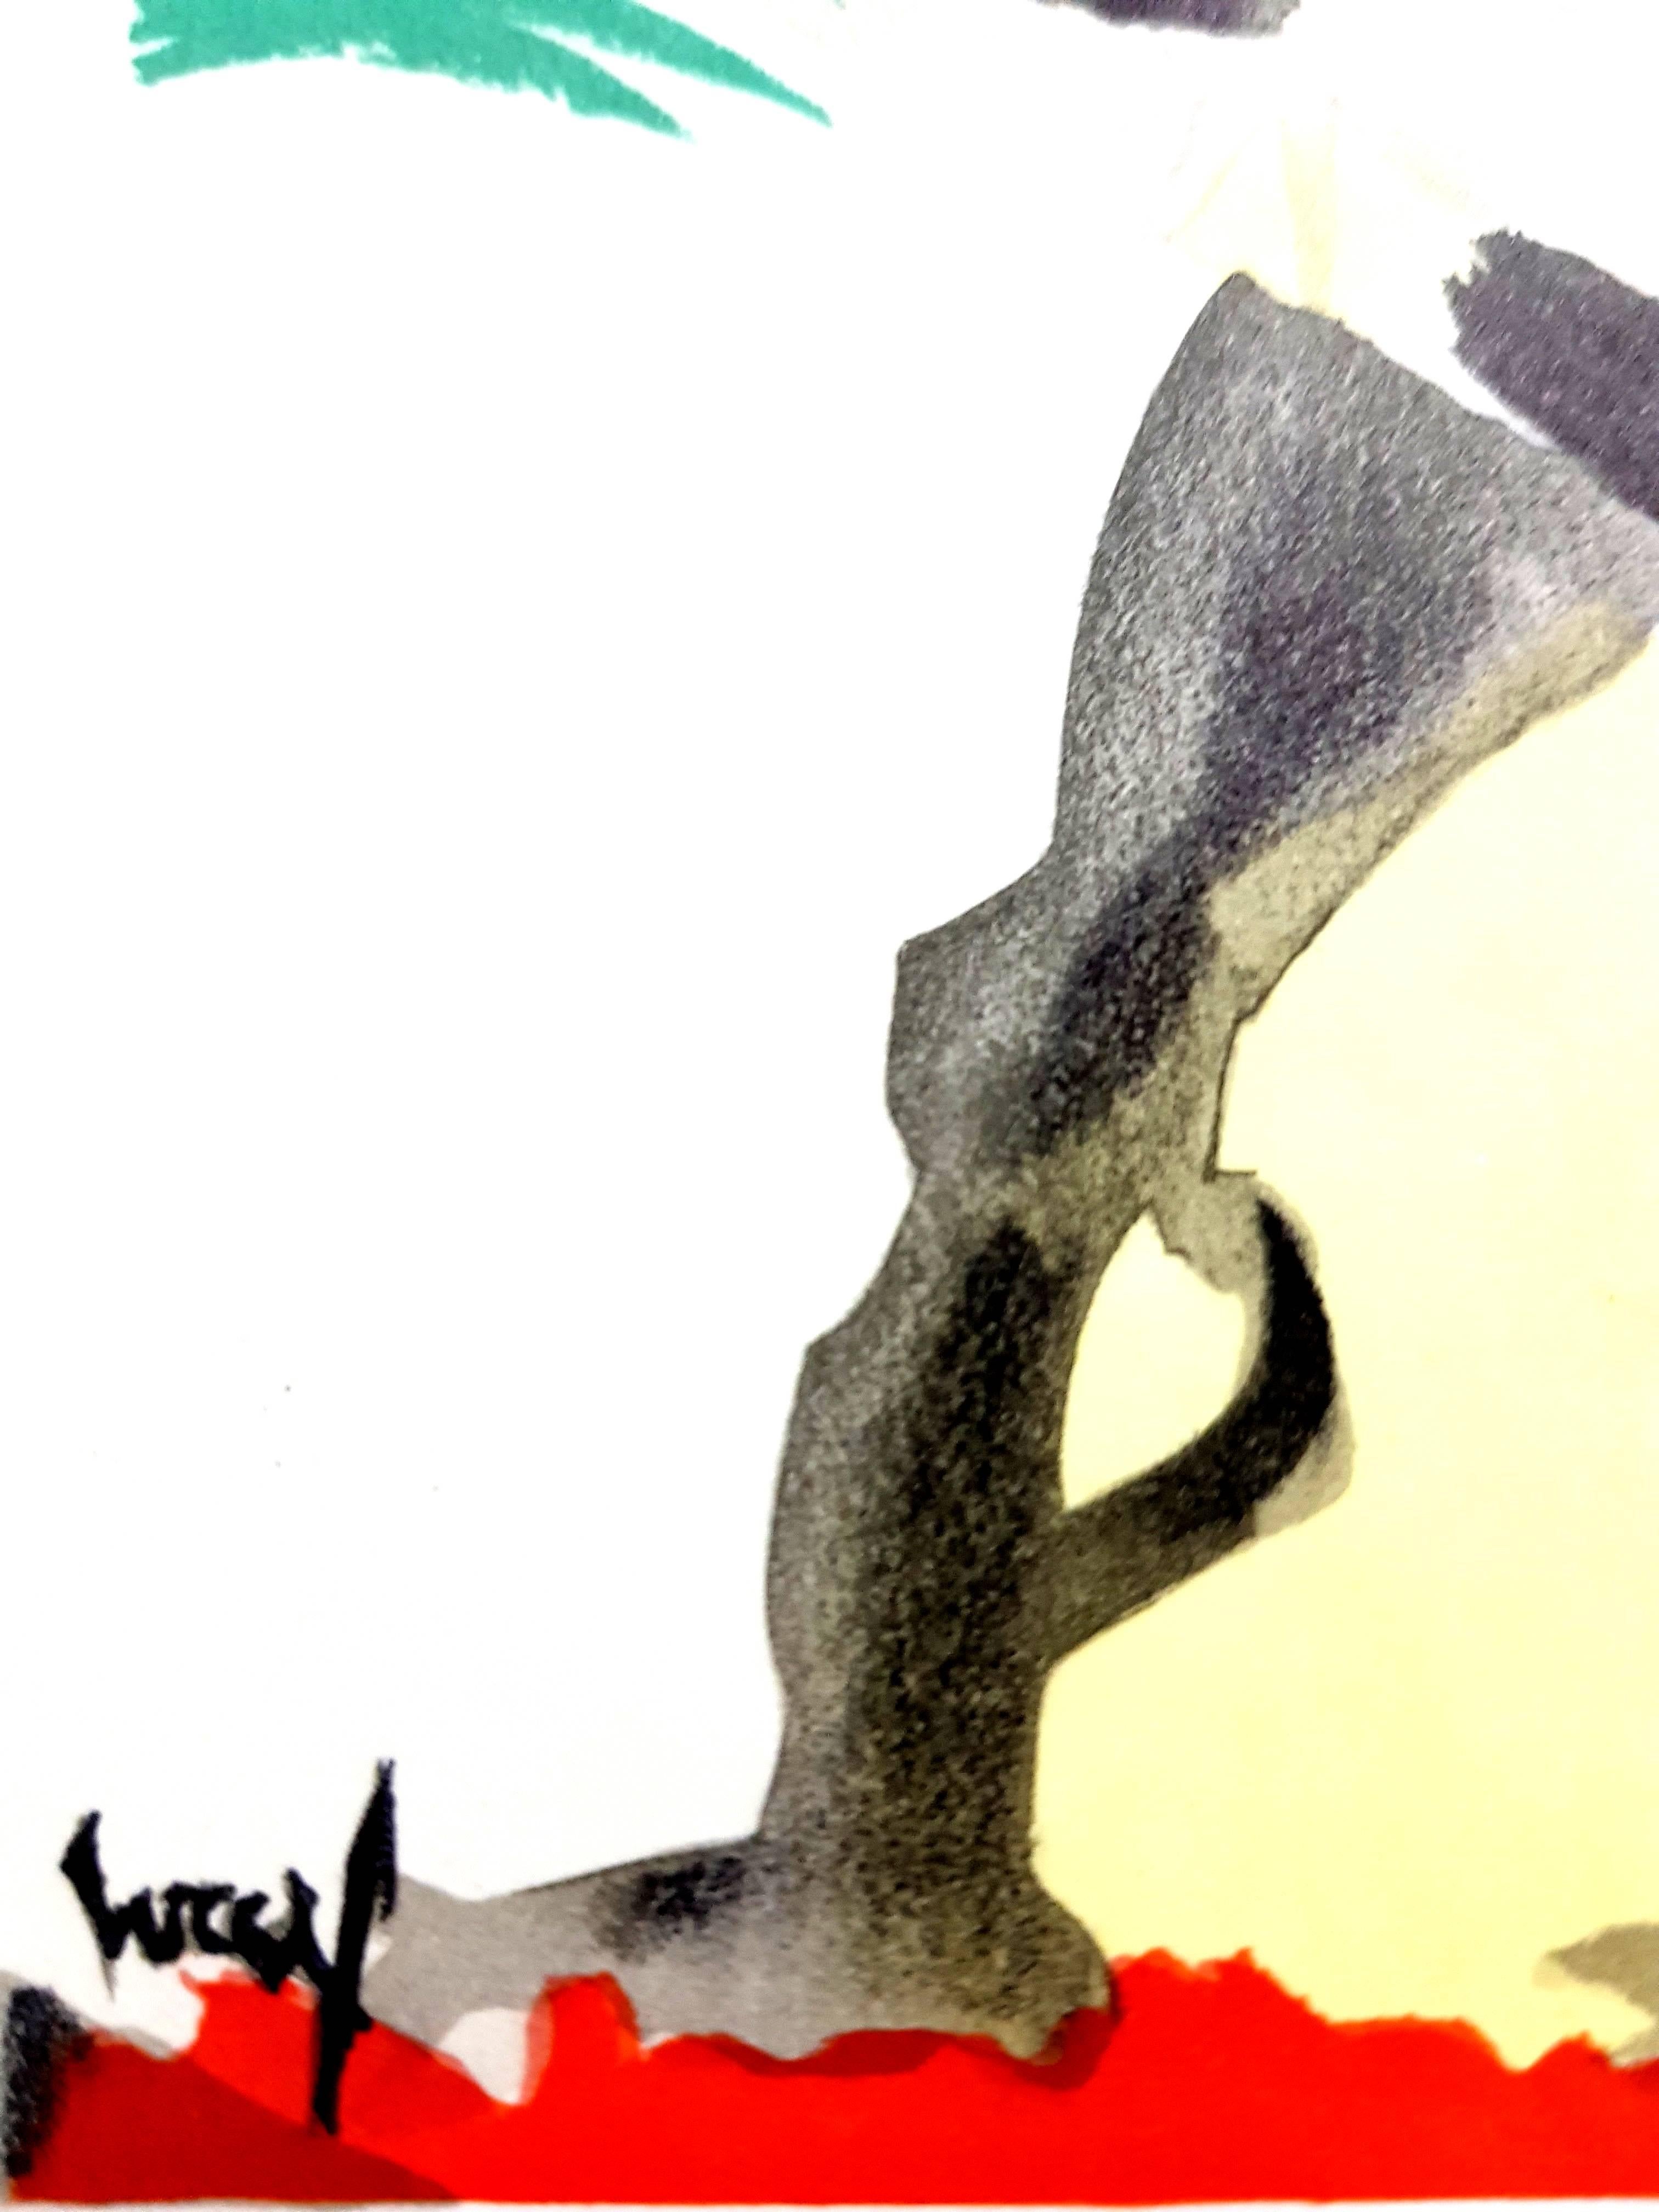 Jean Lurçat (d'après) - Hommage à Dufy - Lithographie - Print de Jean Lurcat